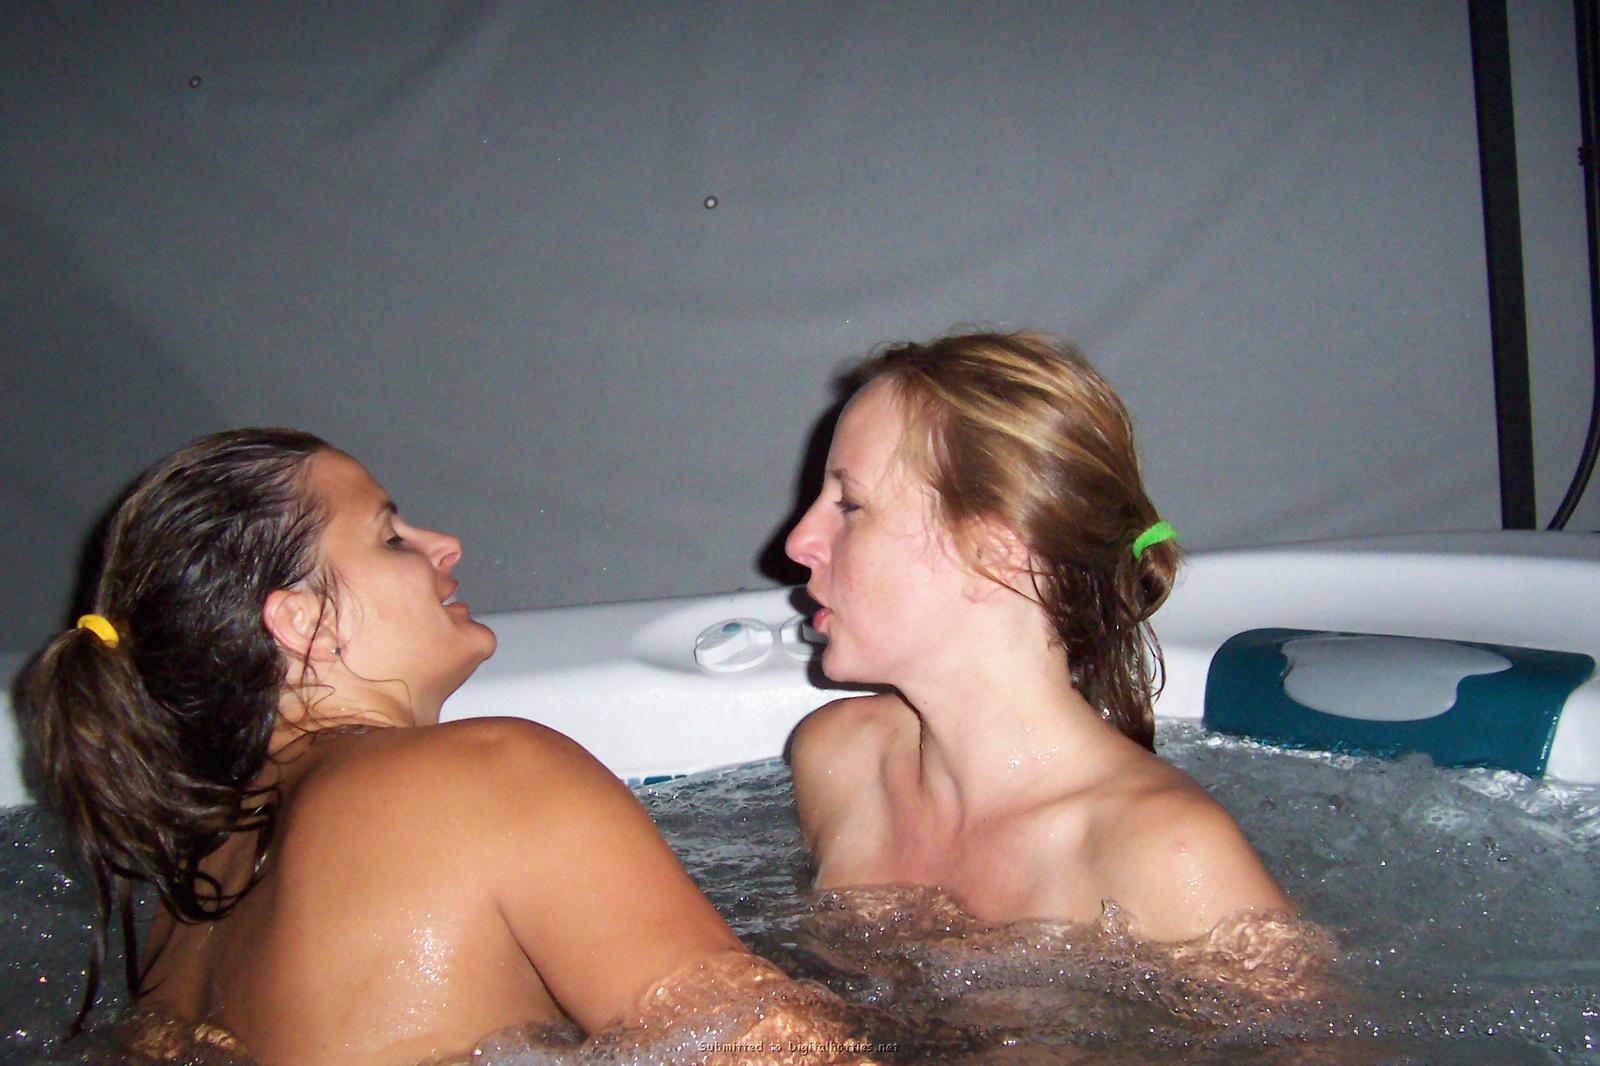 Lesbian Hottub - Lesbian hot tub gif - Porn tube